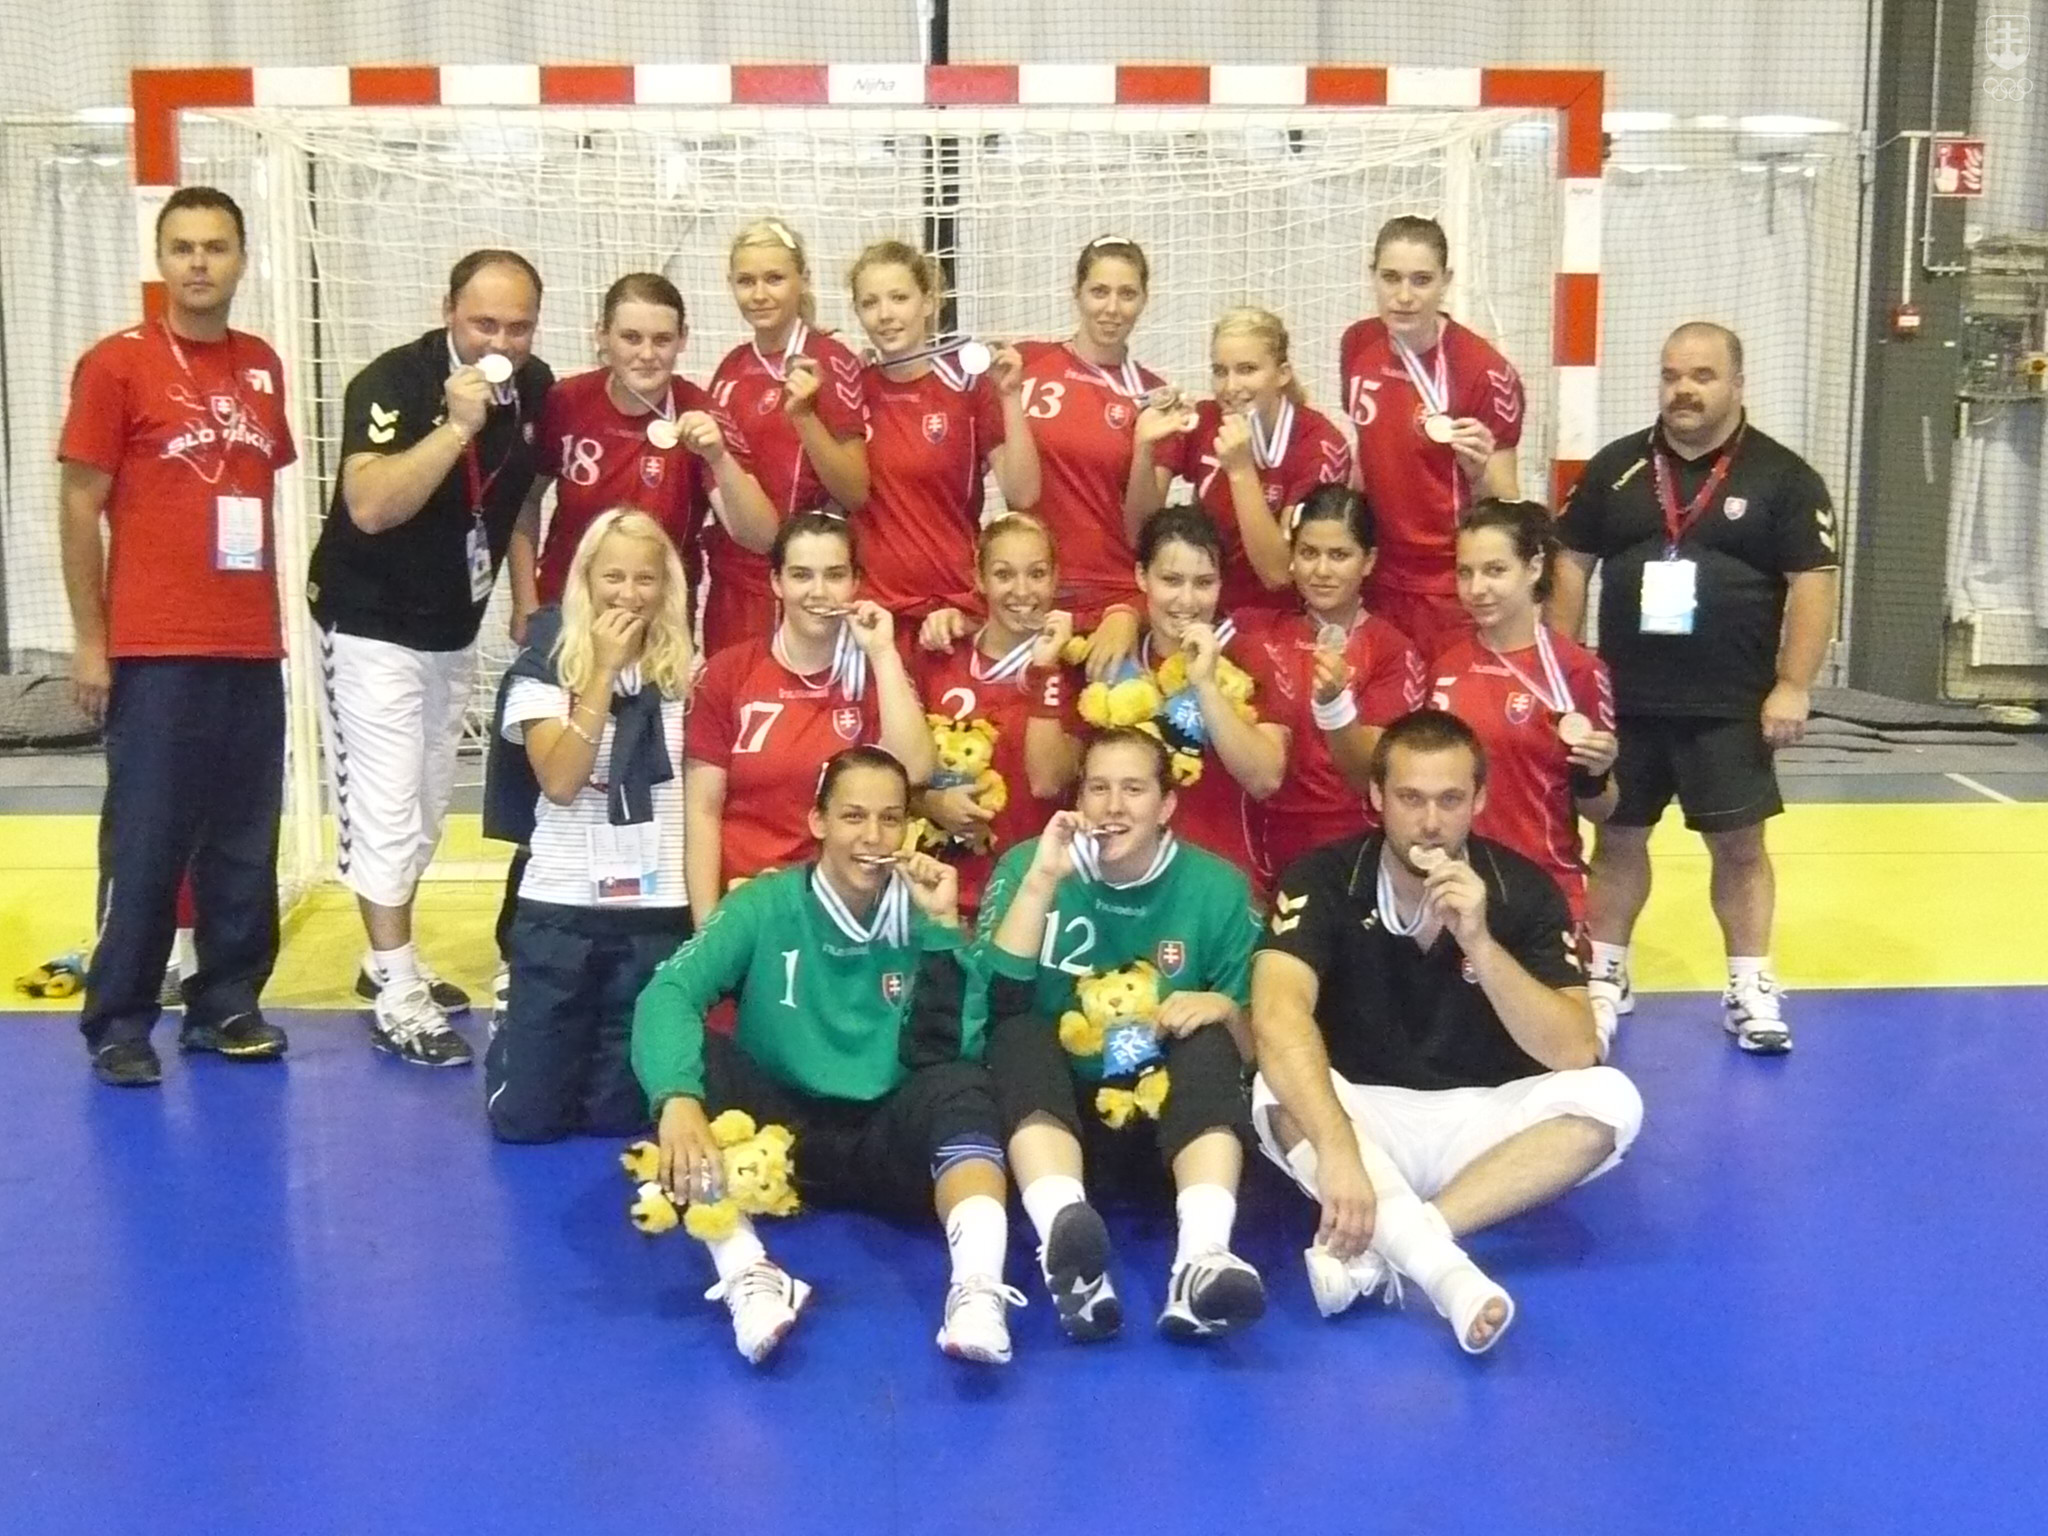 V minulosti mohlo Slovensko na letnom EYOF postaviť v troch kolektívnych športoch dohromady len jeden chlapčenský alebo jeden dievčenský tím, ale v Banskej Bystrici vzhľadom na domáce prostredie môžeme obsadiť chlapčenské aj dievčenské turnaje v basketbale, hádzanej i vo volejbale. Zatiaľ poslednú tímovú medailu získala slovenská výprava na lentom EYOF 2009 v Tampere zásluhou družstva hádzanárok - na snímke.